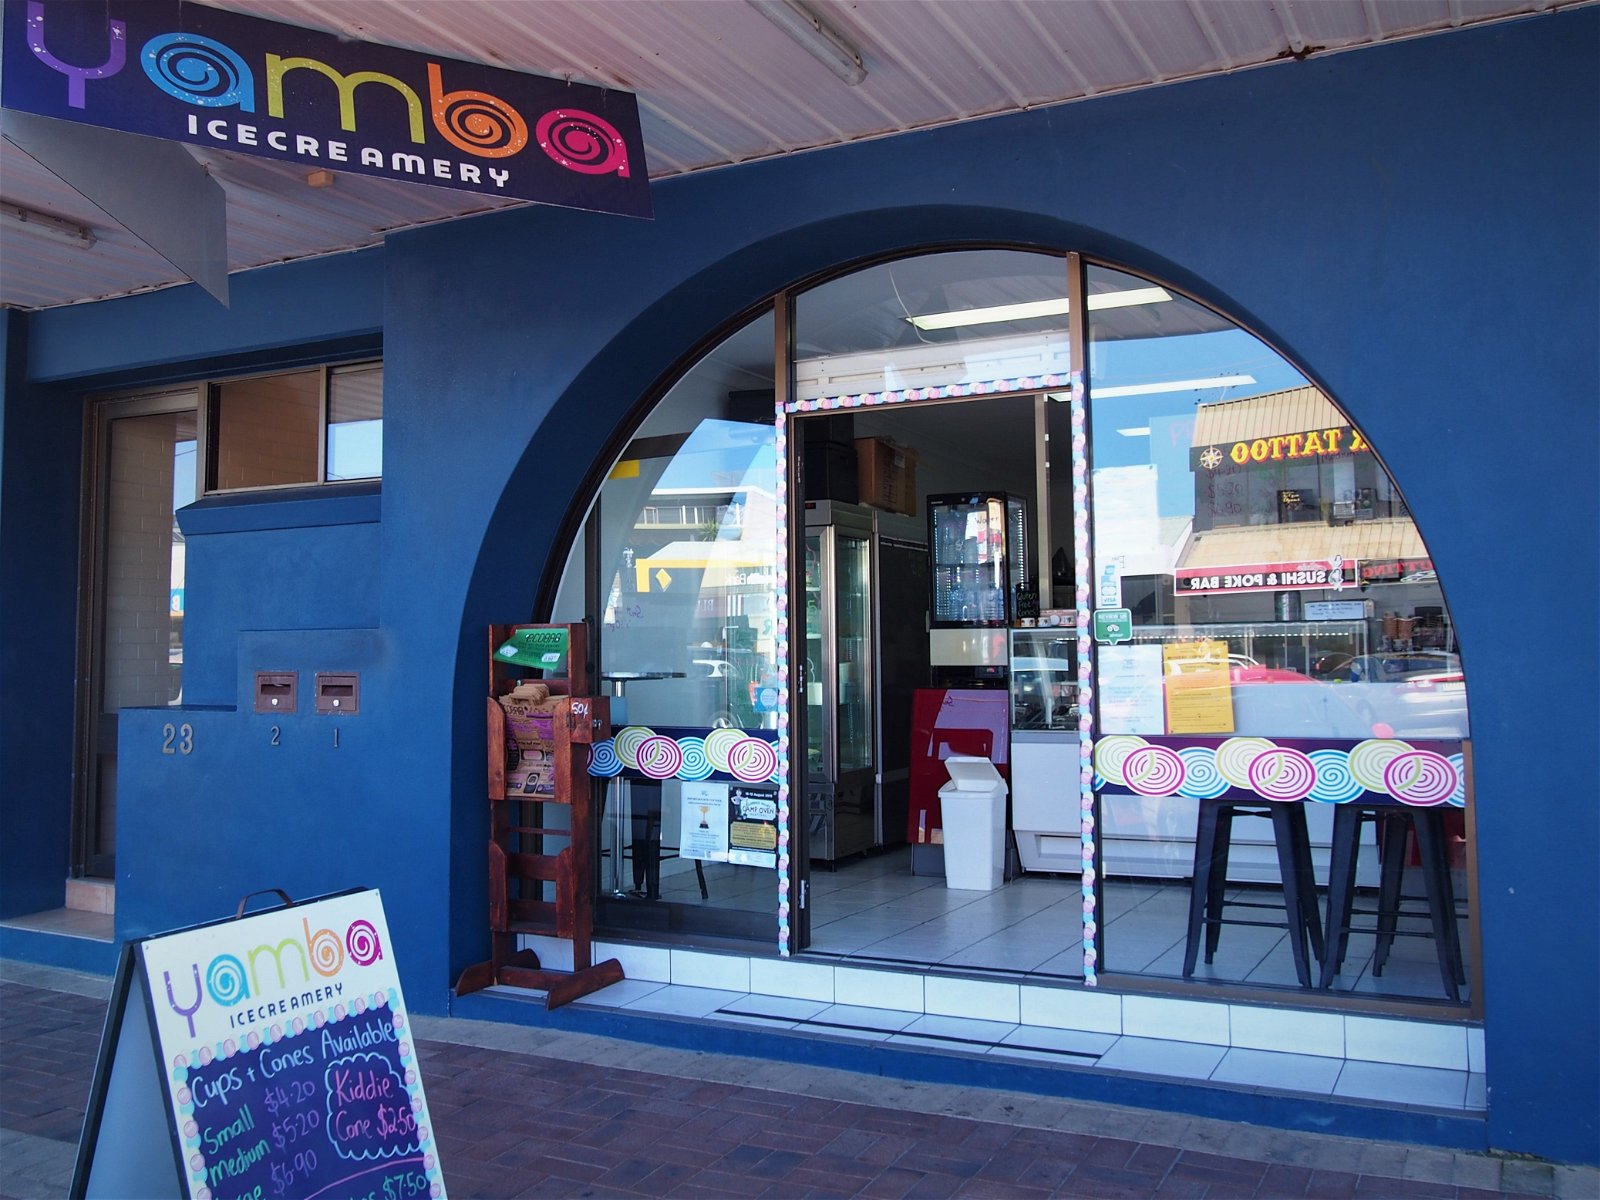 Yamba Icecreamery - Food Delivery Shop